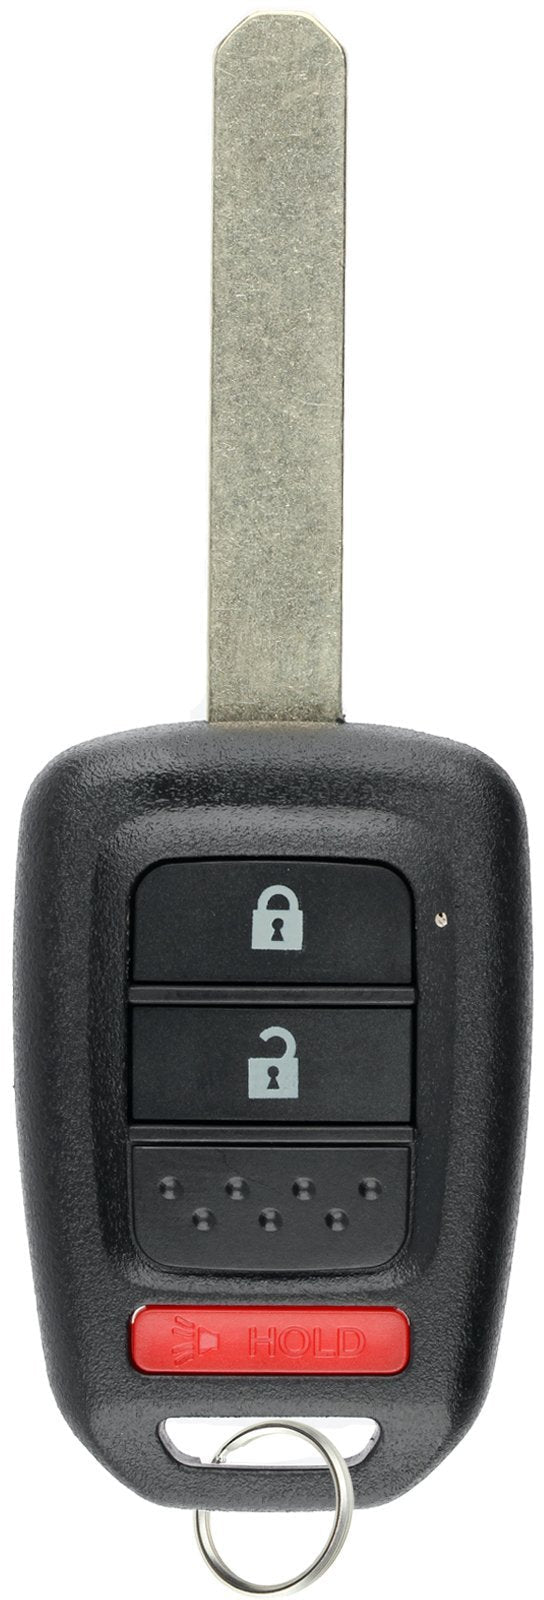  [AUSTRALIA] - KeylessOption Keyless Entry Remote Fob Uncut Ignition Car Key for Honda Fit CR-V HR-V Crosstour